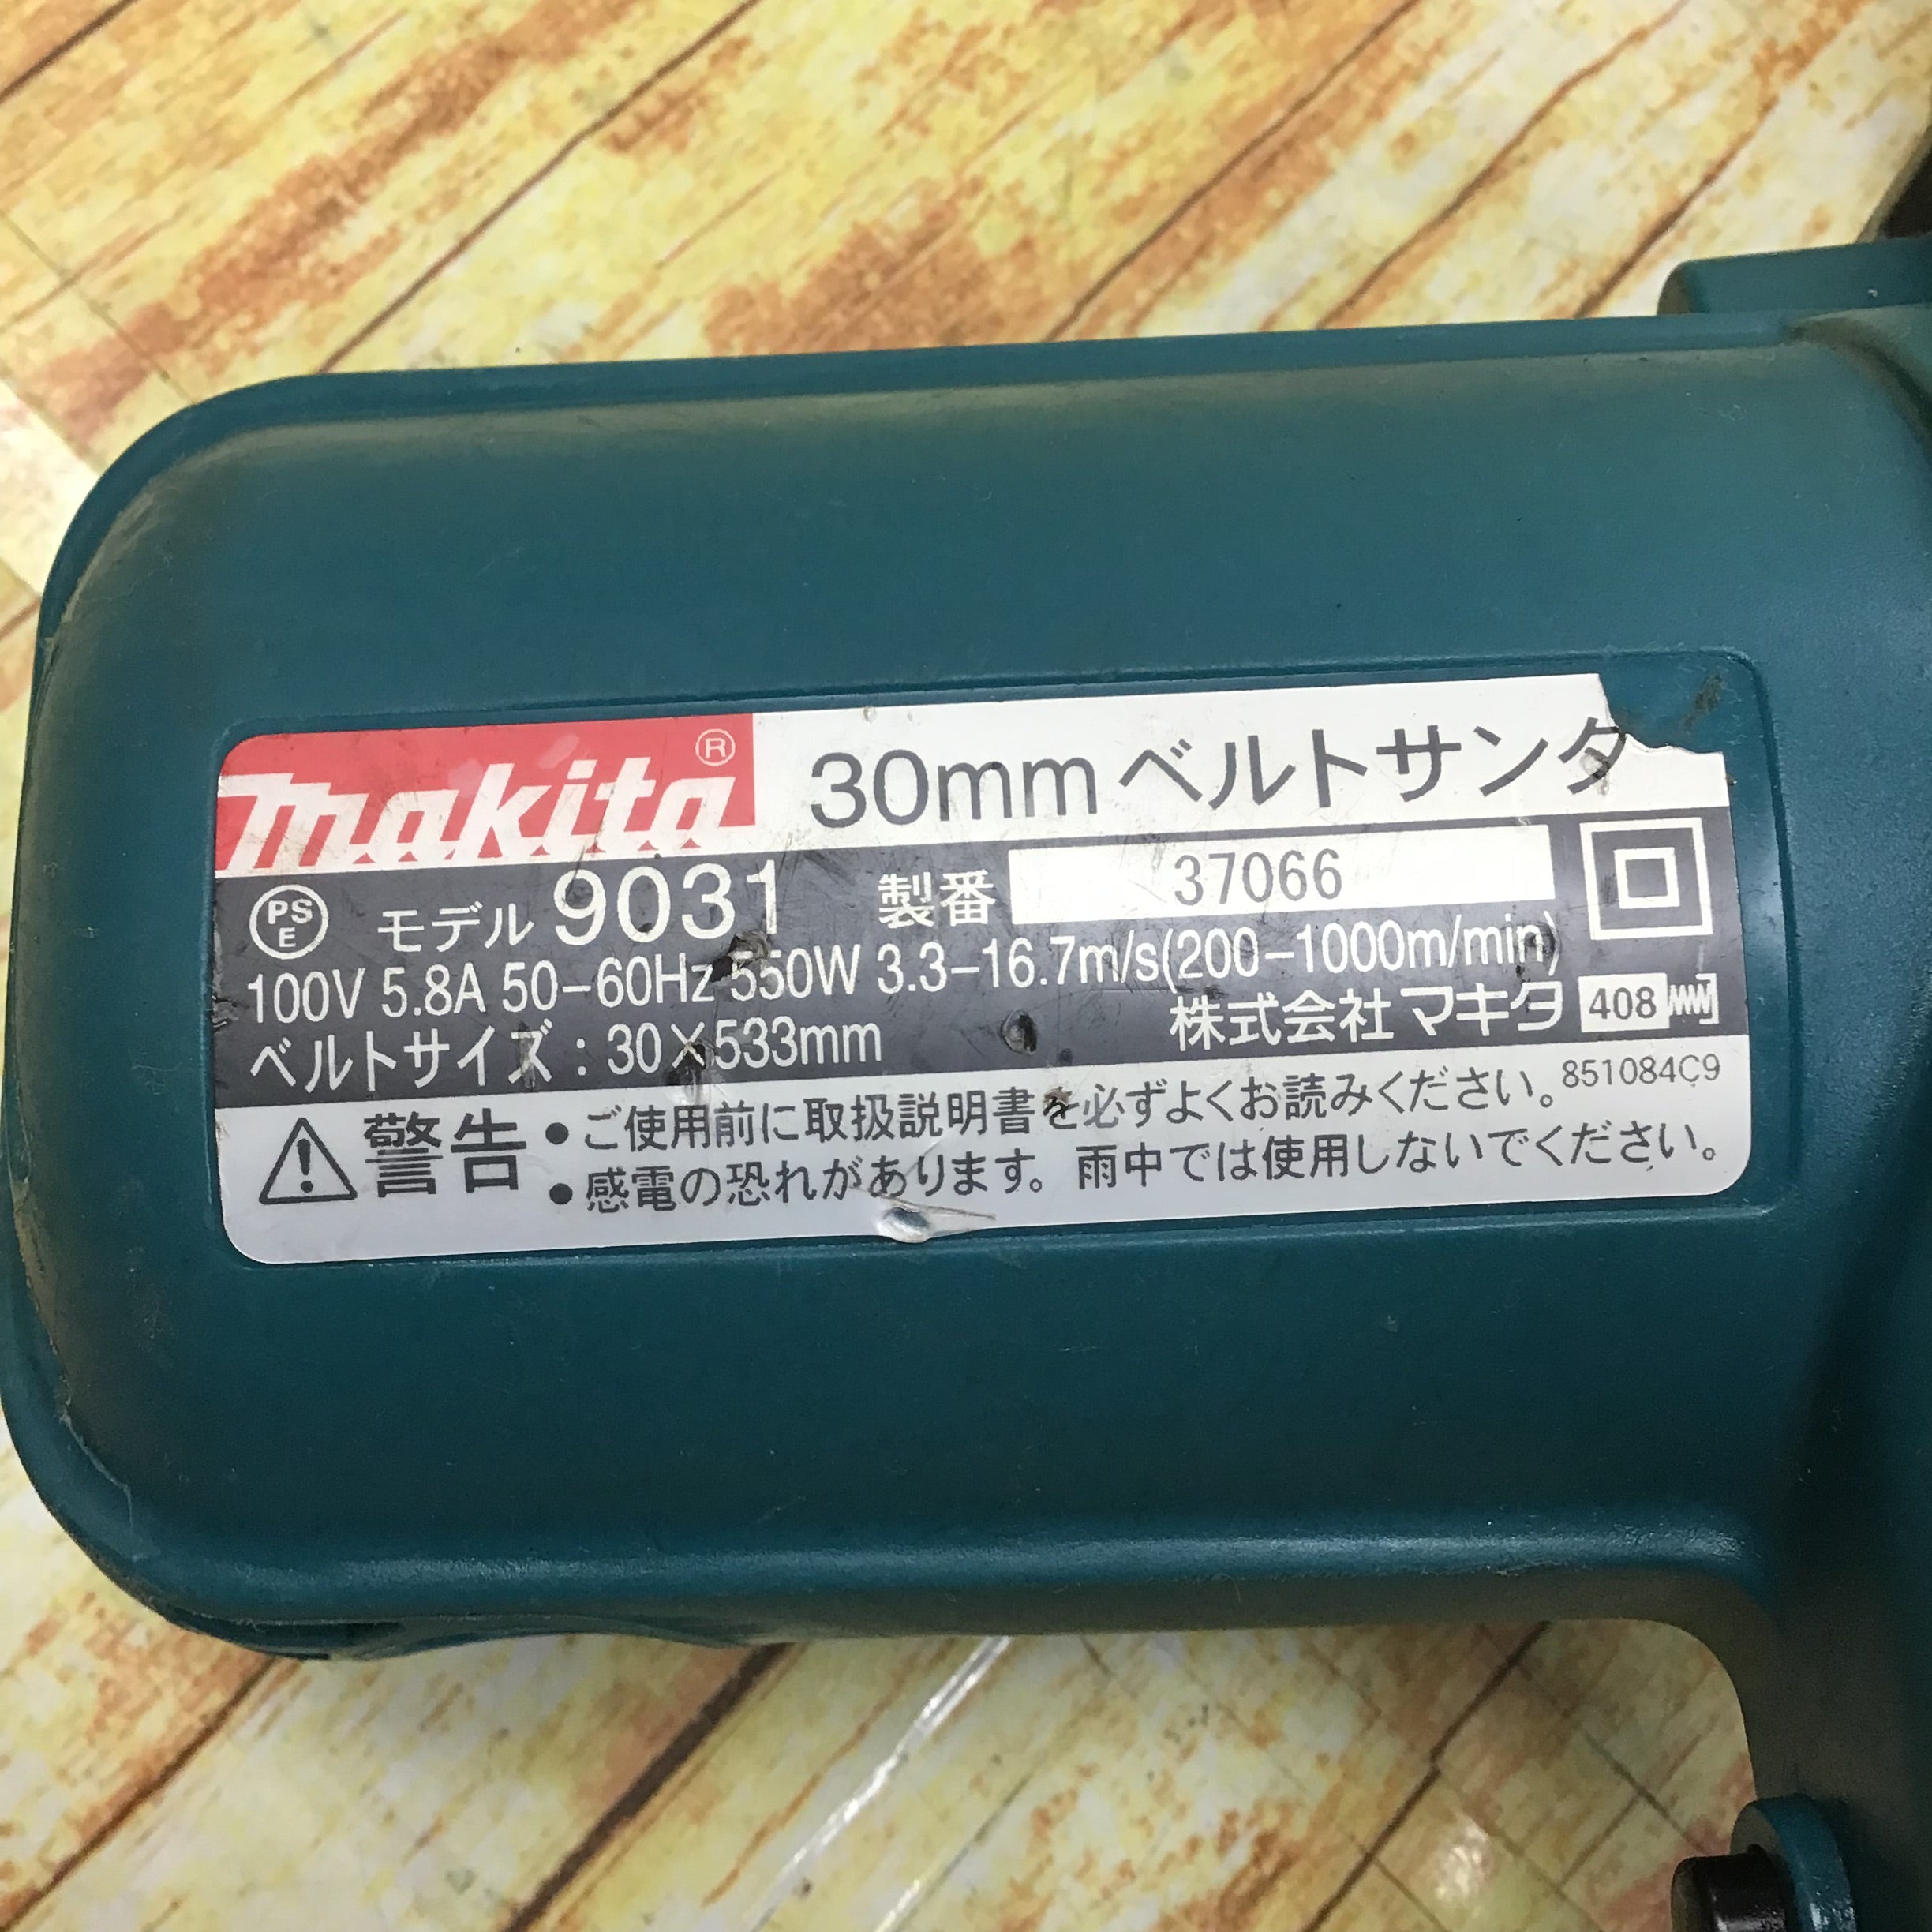 マキタ(Makita) ベルトサンダ 30mm 9031 - 2